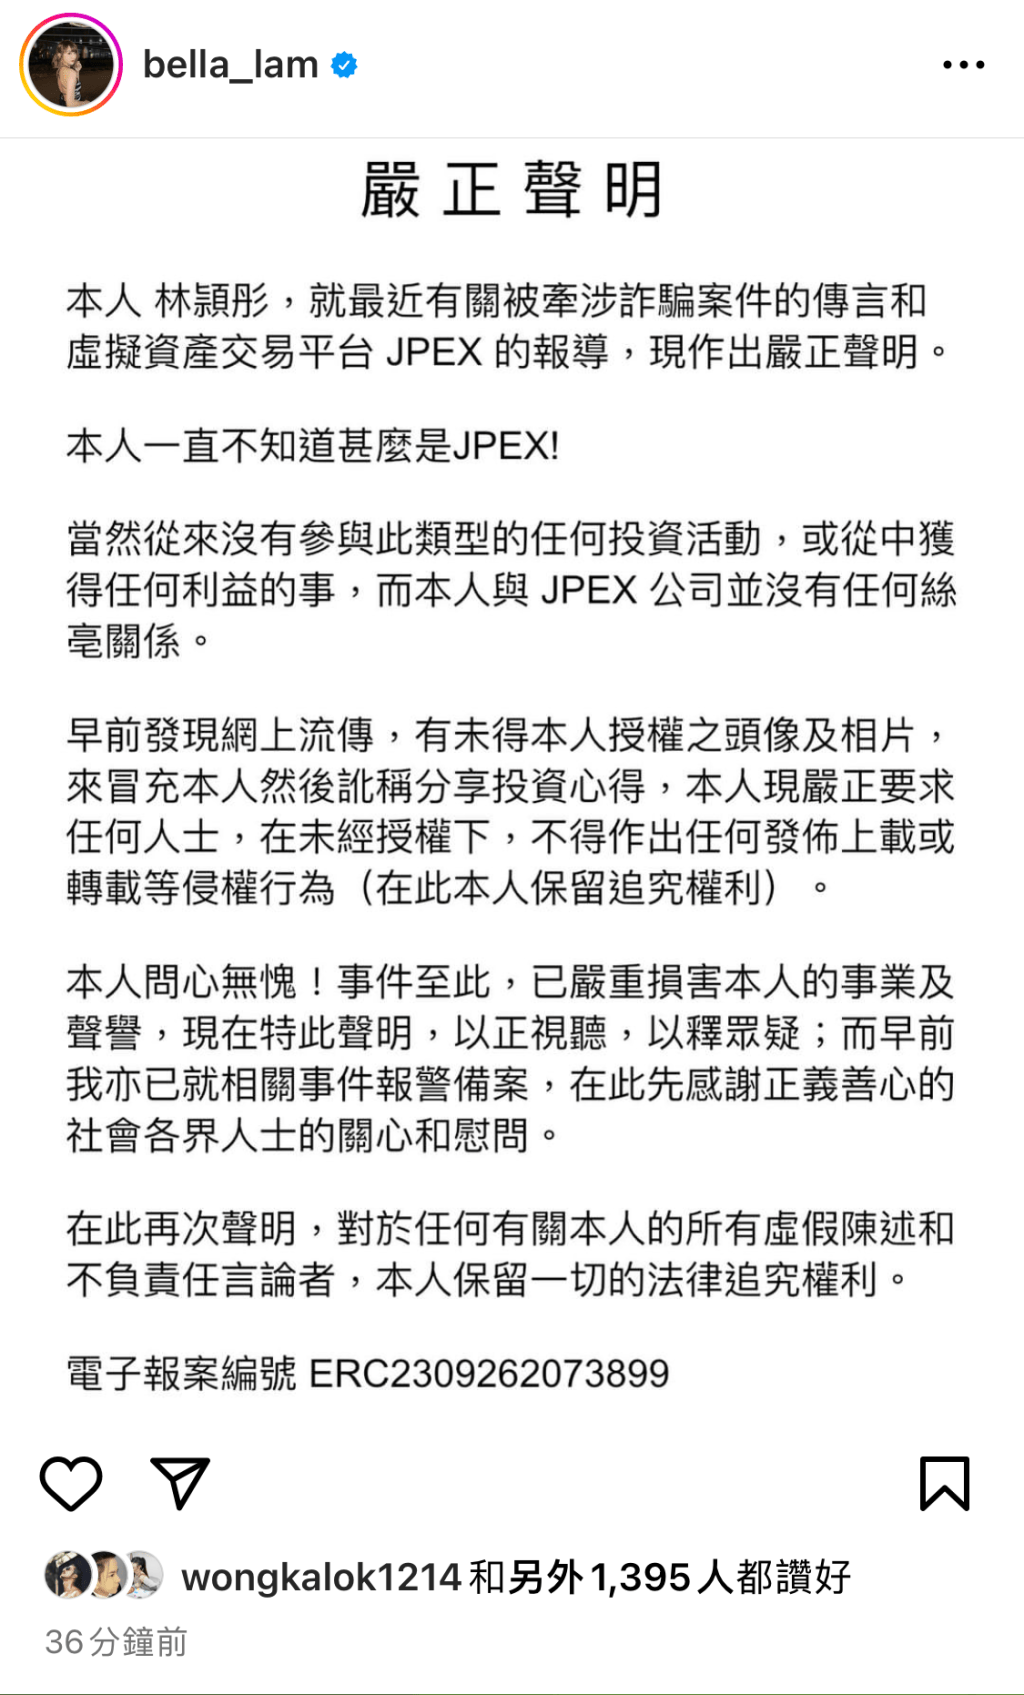 林颖彤曾在IG发声明否认与JPEX案有关。